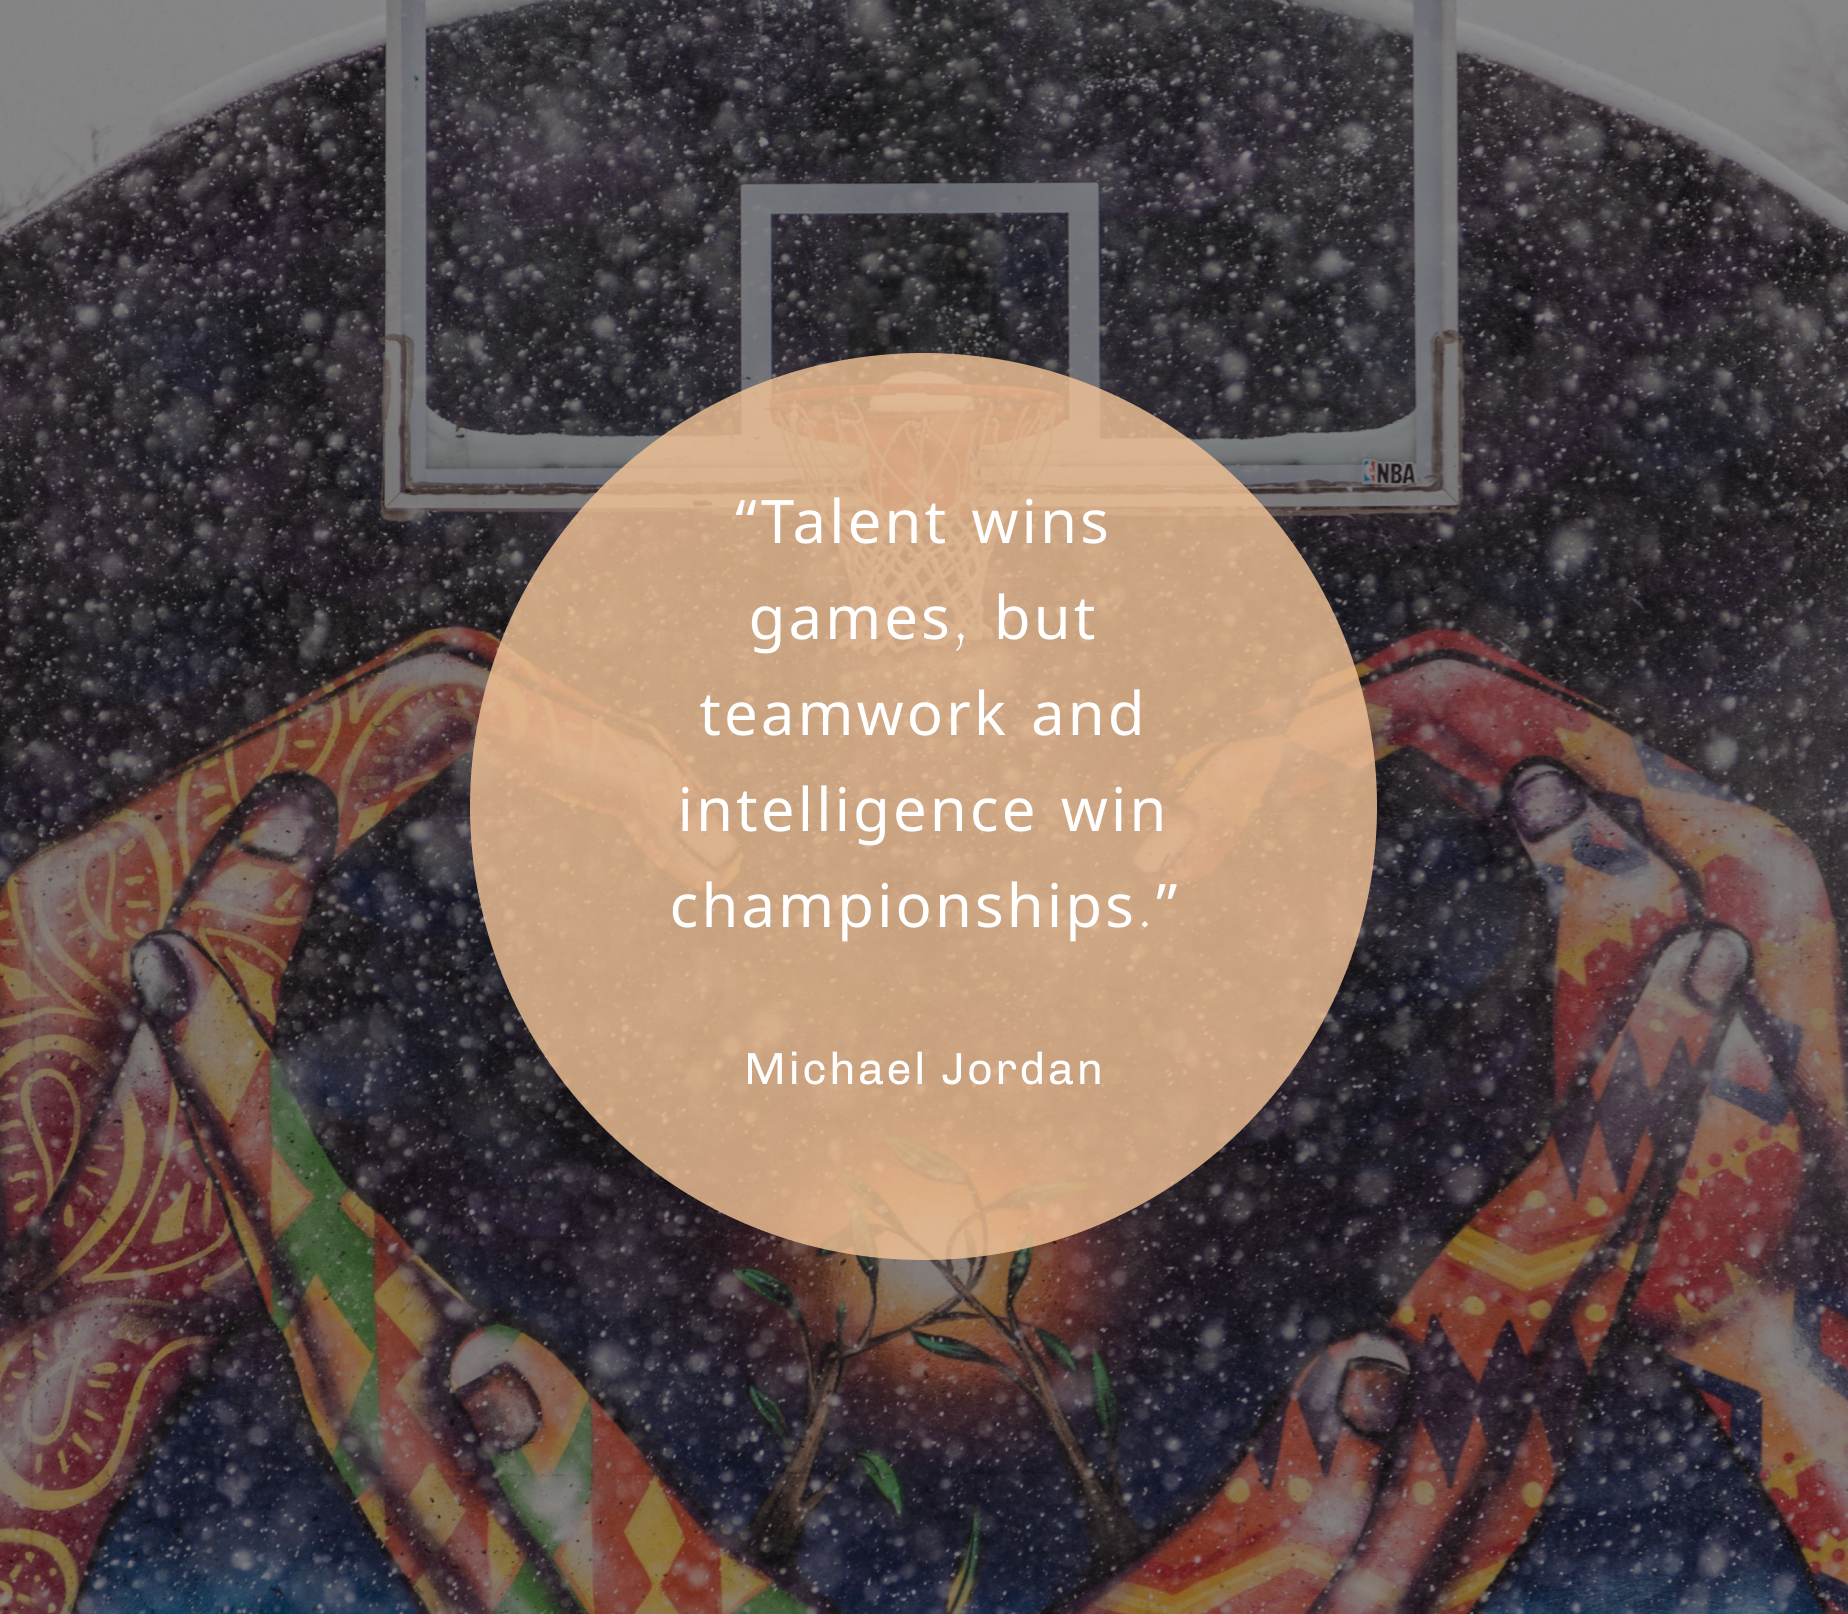 “才华可以赢得比赛，但团队合作和智慧才能赢得冠军。”——迈克尔·乔丹